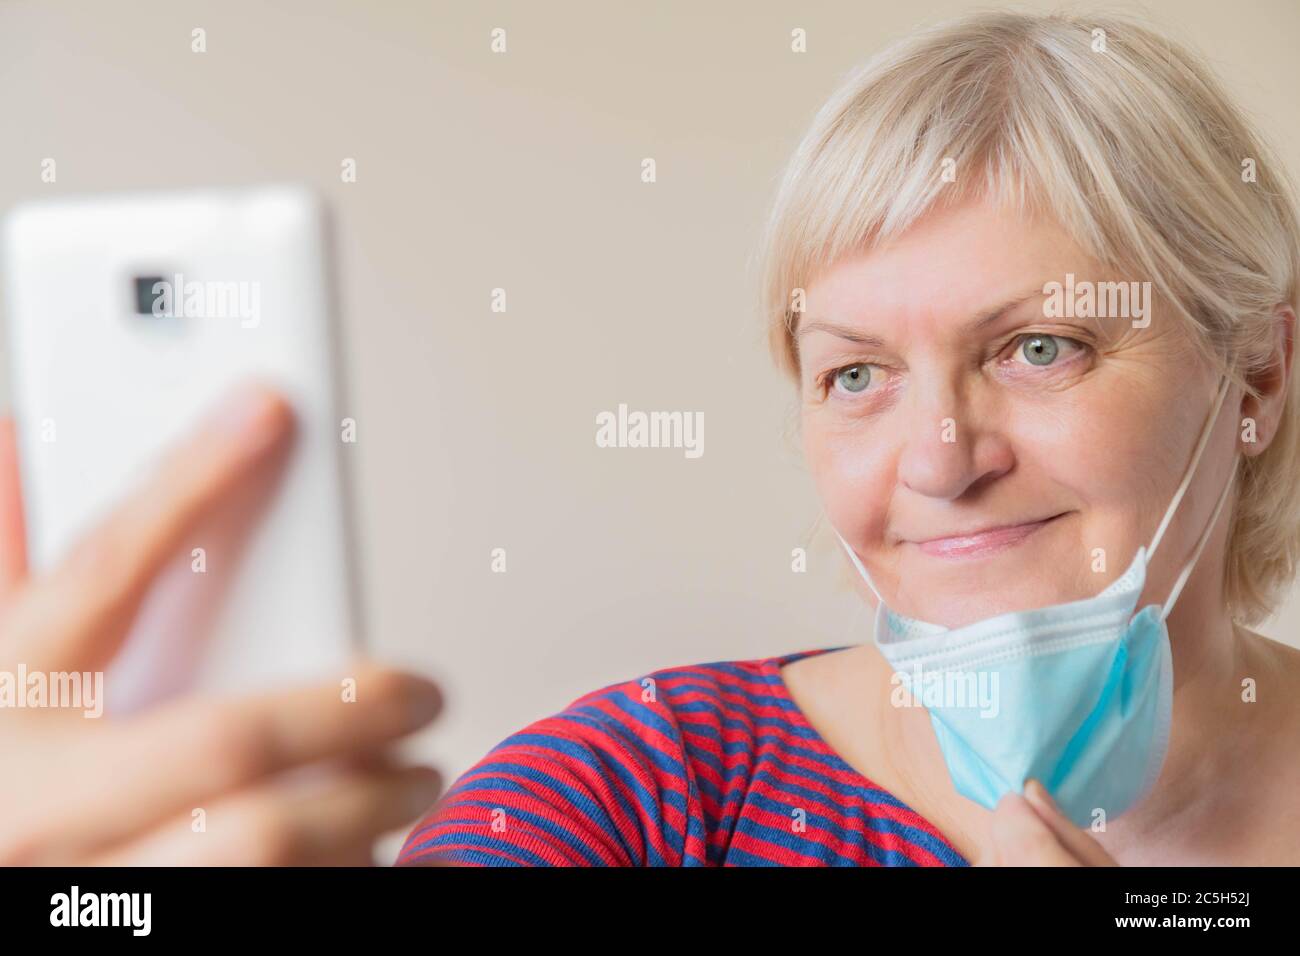 Donna matura che prende selfie tenendo in mano la maschera medica. Donna anziana che prende la maschera medica faccia facendo selfie. Selfie di donna anziana senza maschera Foto Stock